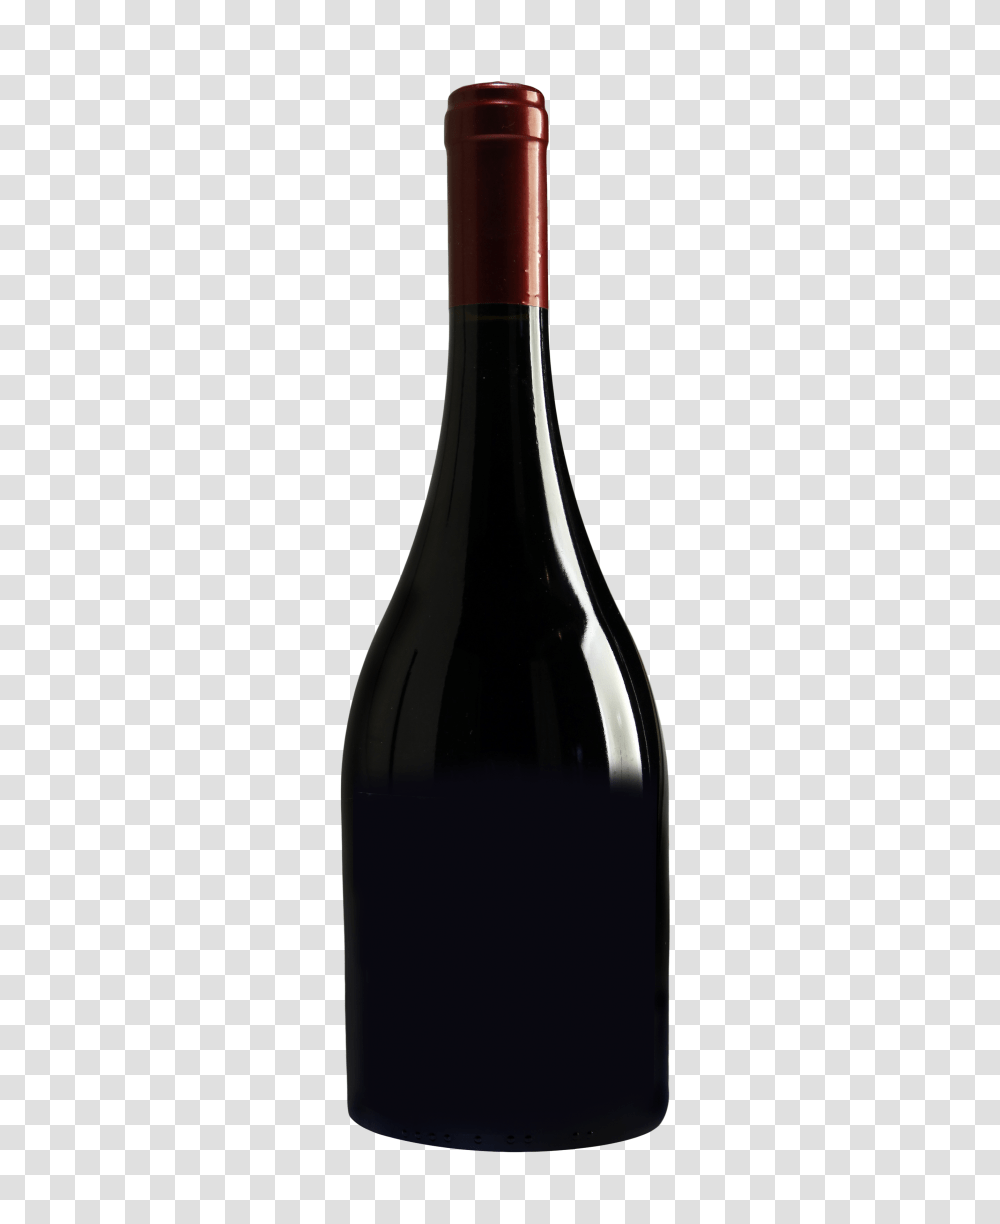 Liquor Bottle Image, Wine, Alcohol, Beverage, Drink Transparent Png